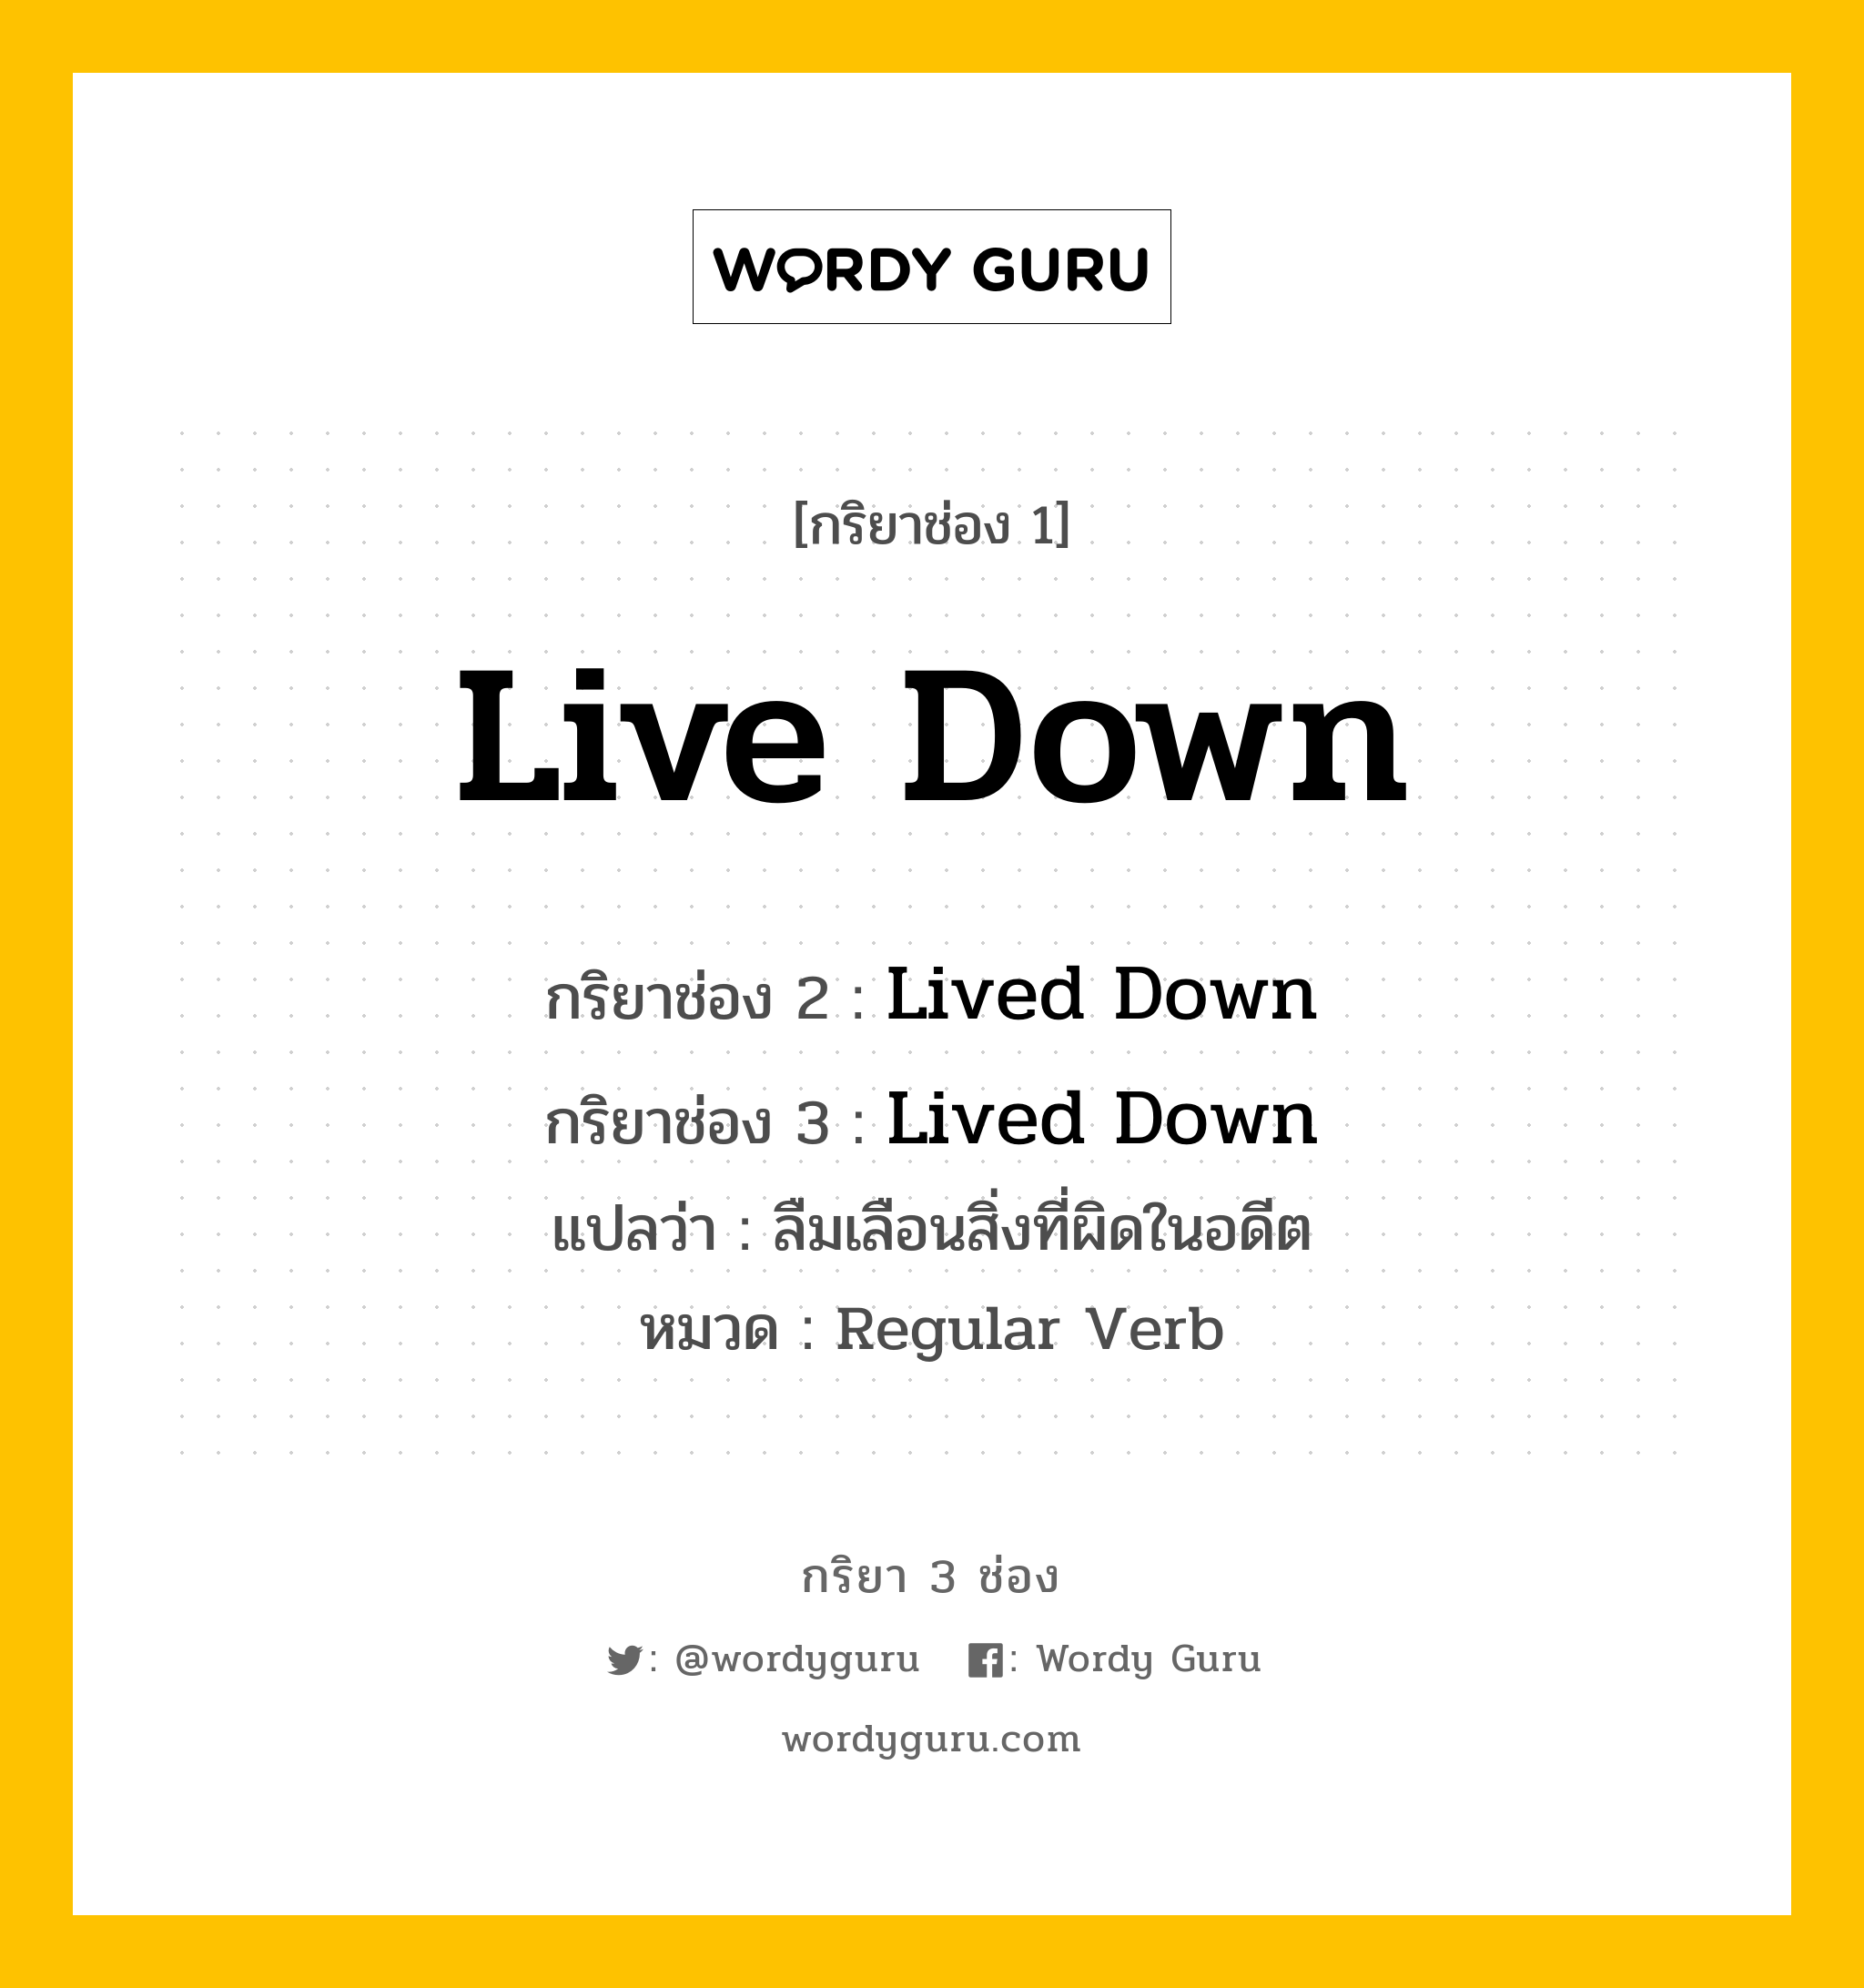 กริยา 3 ช่อง: Live Down ช่อง 2 Live Down ช่อง 3 คืออะไร, กริยาช่อง 1 Live Down กริยาช่อง 2 Lived Down กริยาช่อง 3 Lived Down แปลว่า ลืมเลือนสิ่งที่ผิดในอดีต หมวด Regular Verb หมวด Regular Verb